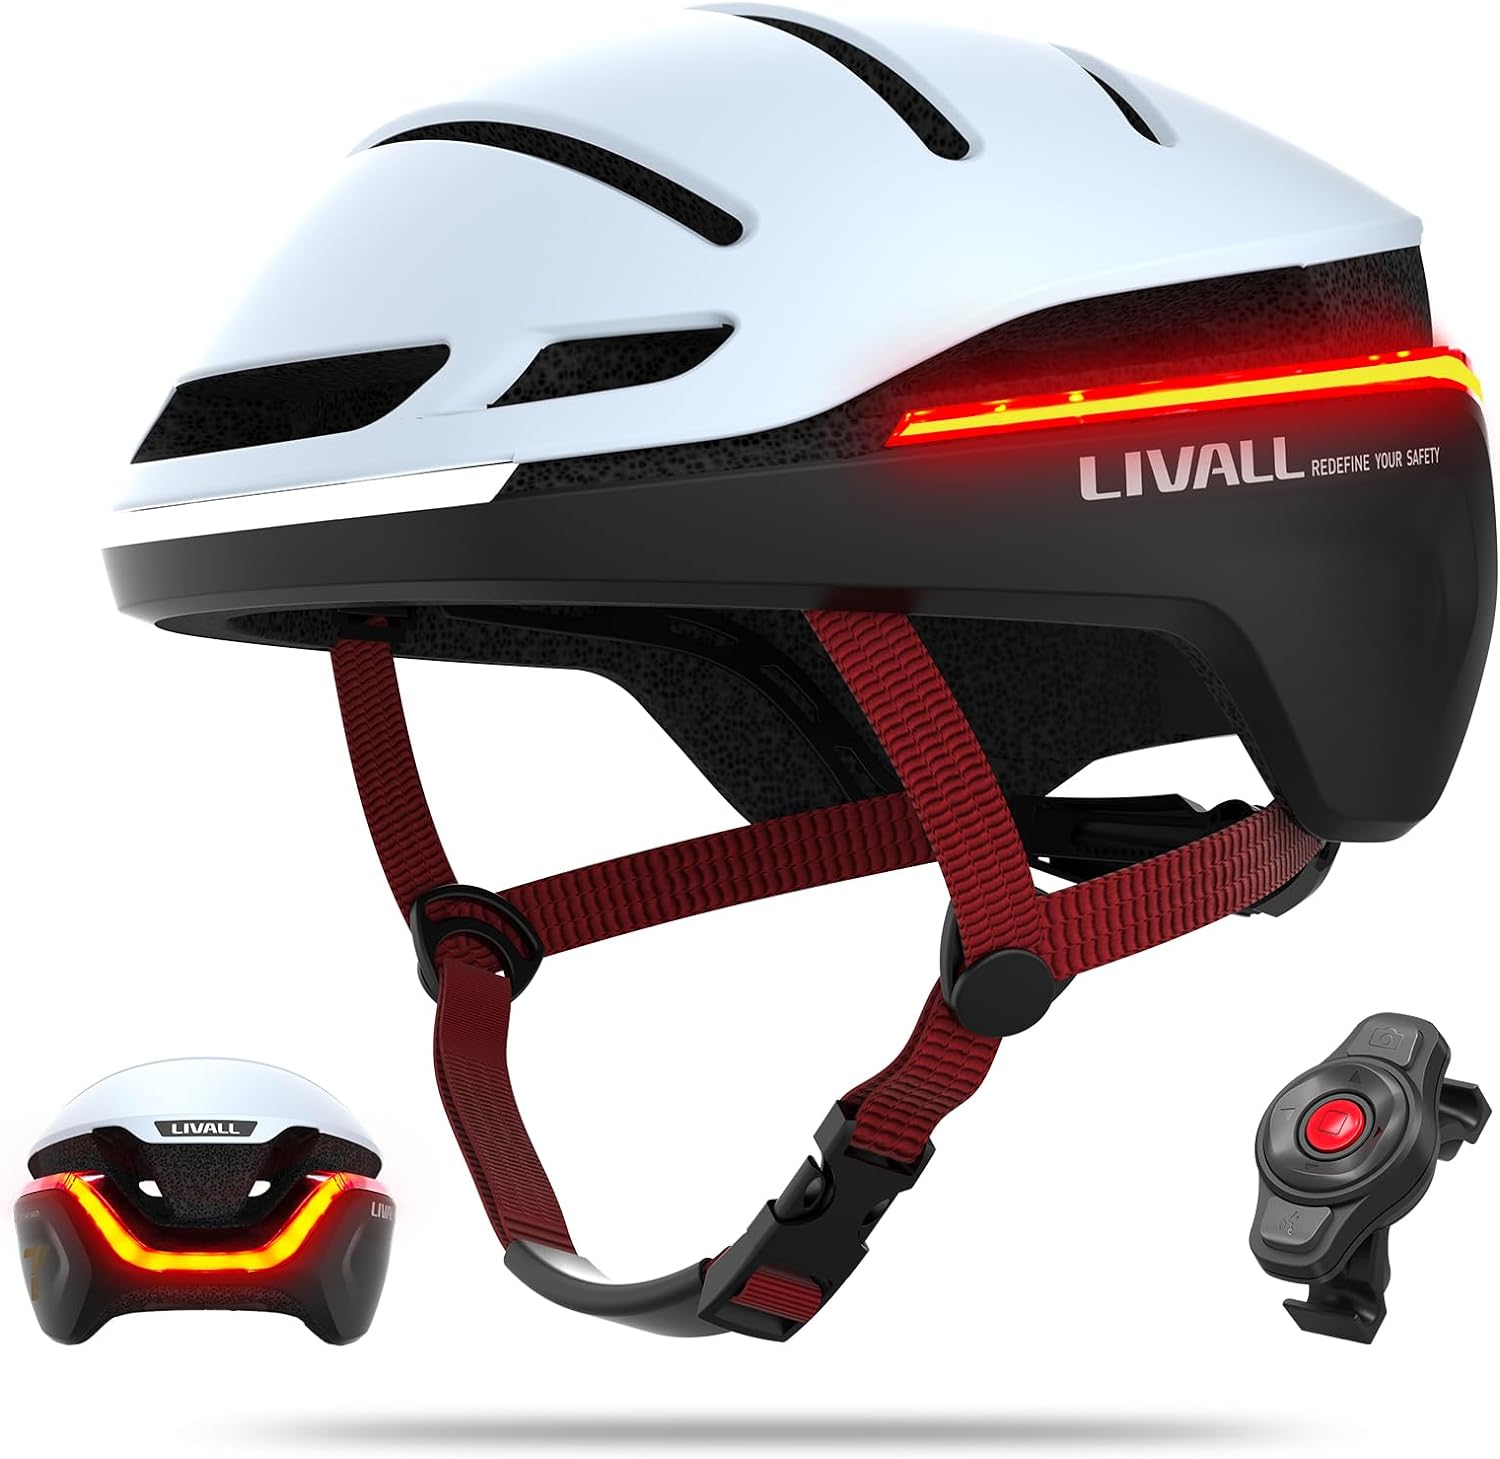 LIVALL EVO21 Smart Bike Helmet with Light, Smart Helmet with Wide-Angle Light | Turn Signals | Brake Warning Light  - White - L 58-62cm